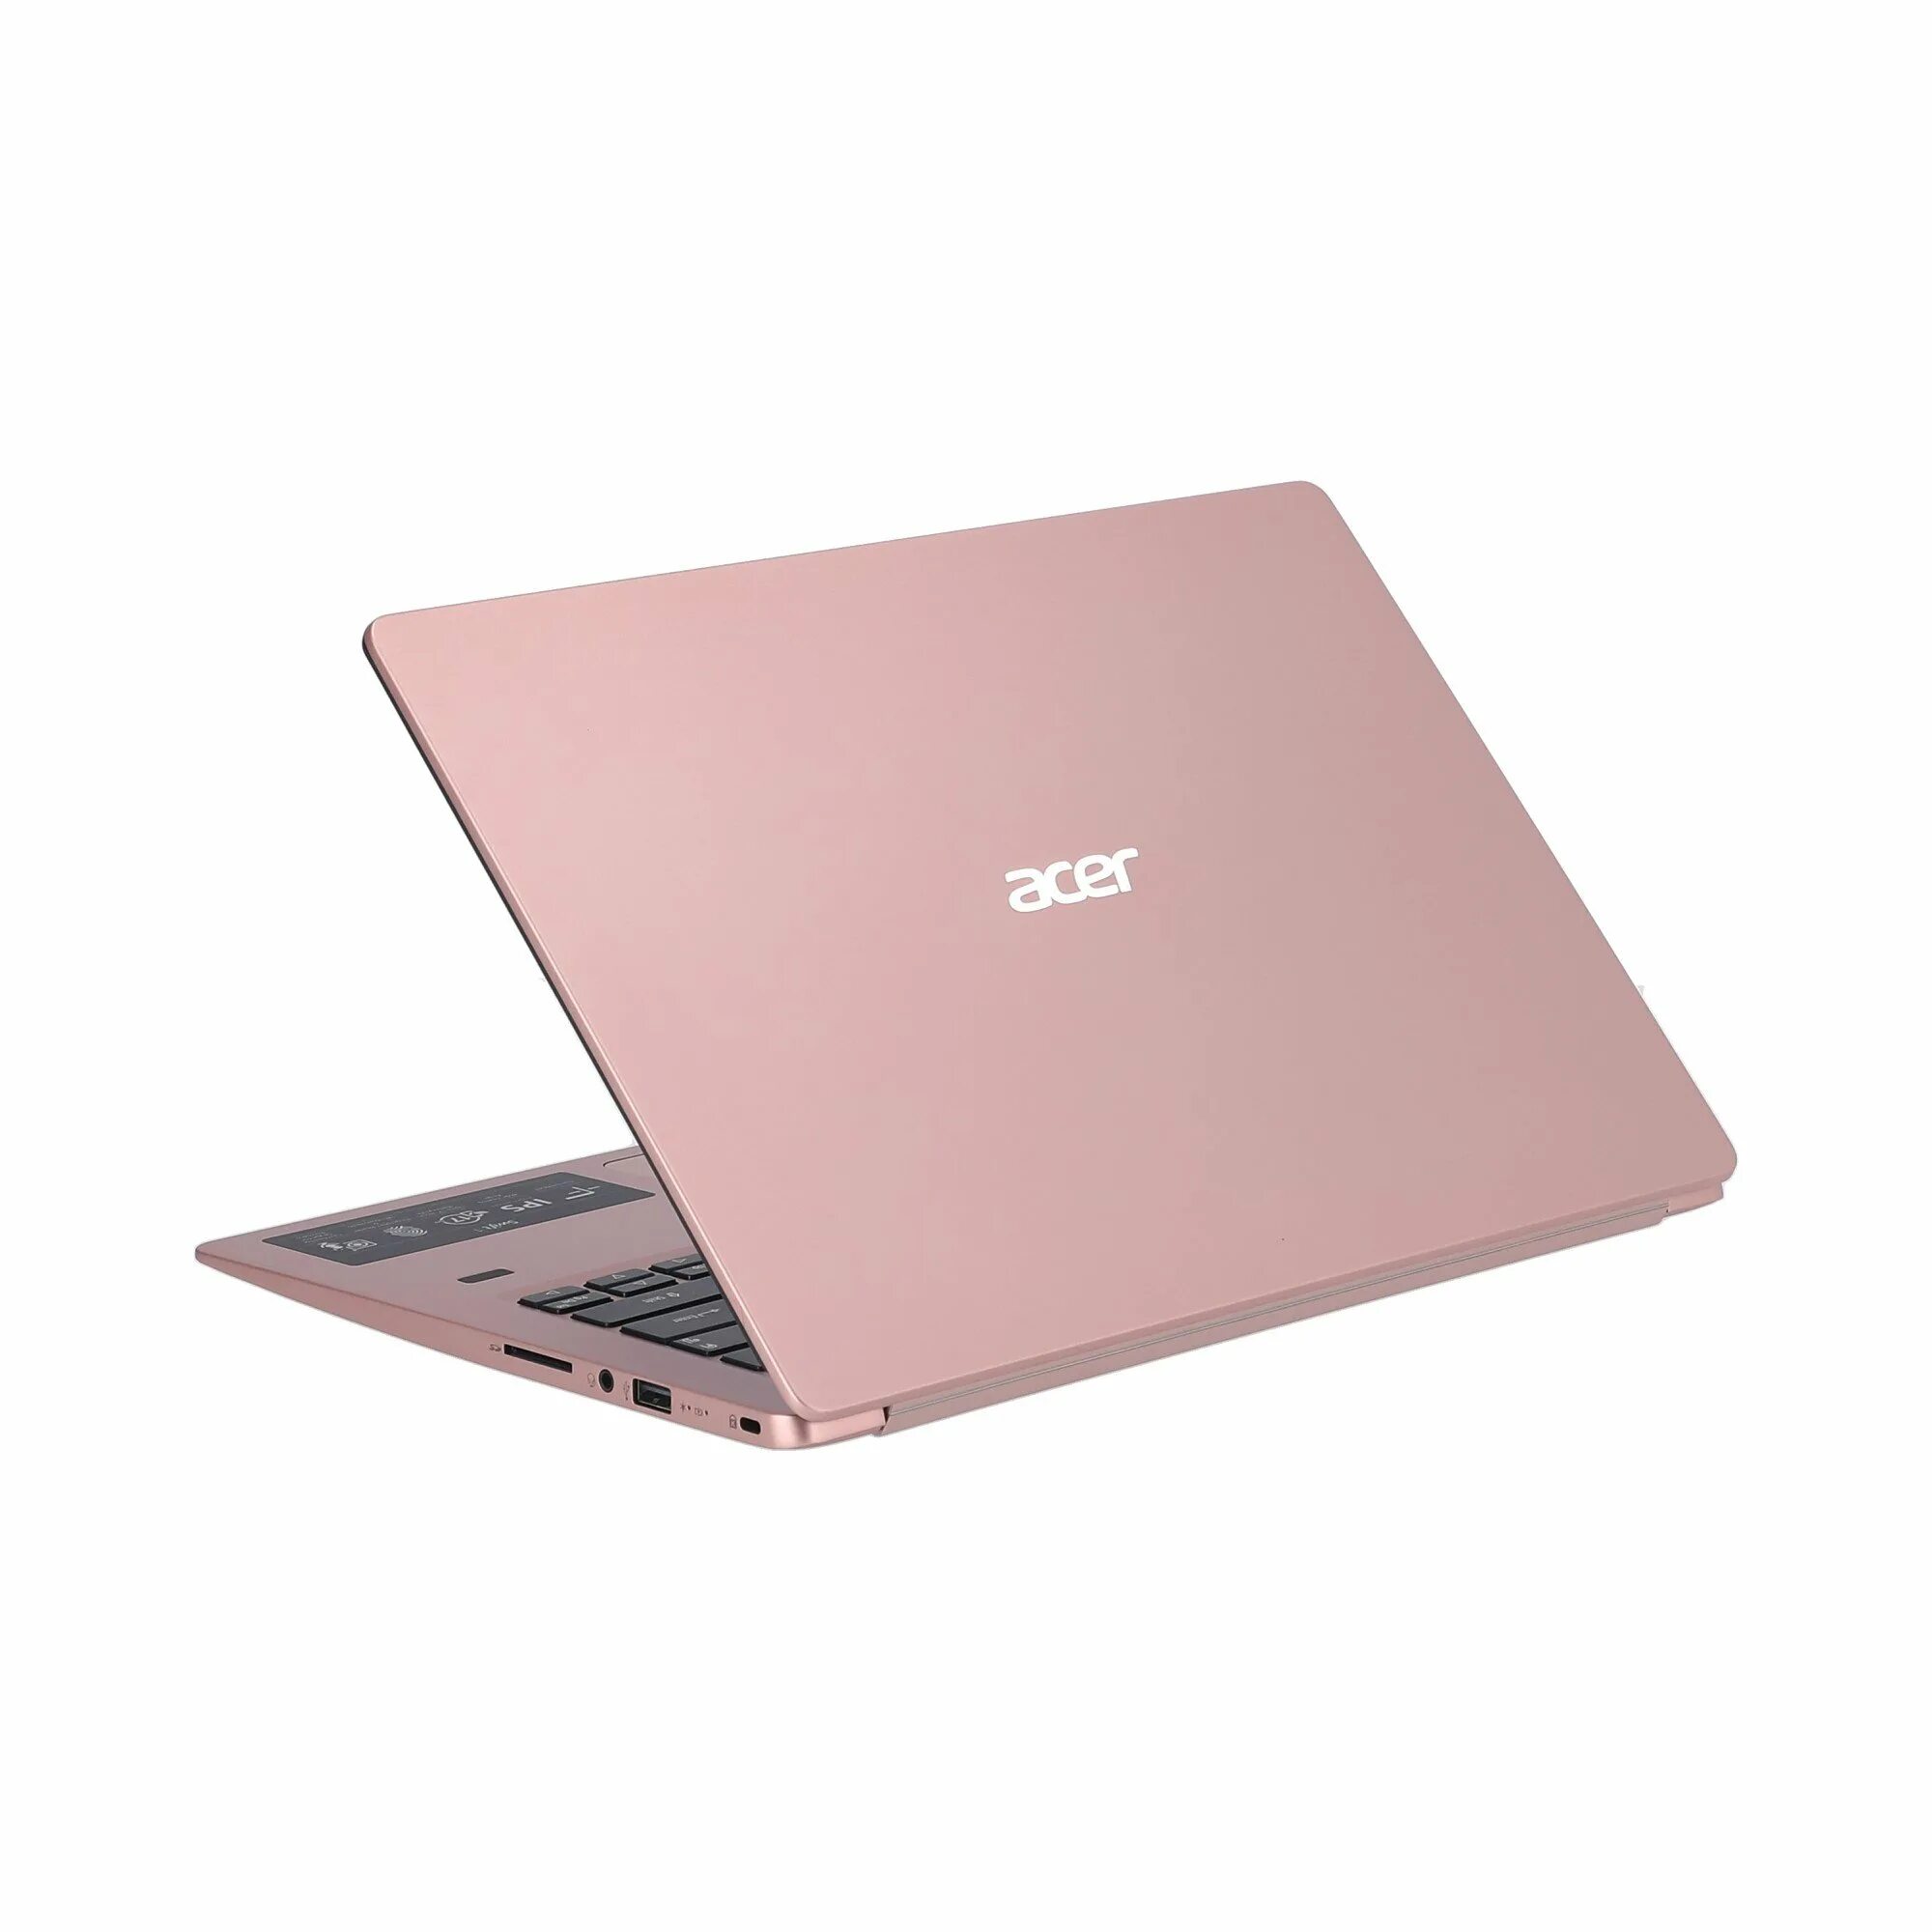 Acer Swift 1 розовый. Ноутбук Acer Swift 1 розовый. Нетбук Acer розовый. Ноутбук Acer розовое золото. Купить новый ноутбук в ростове